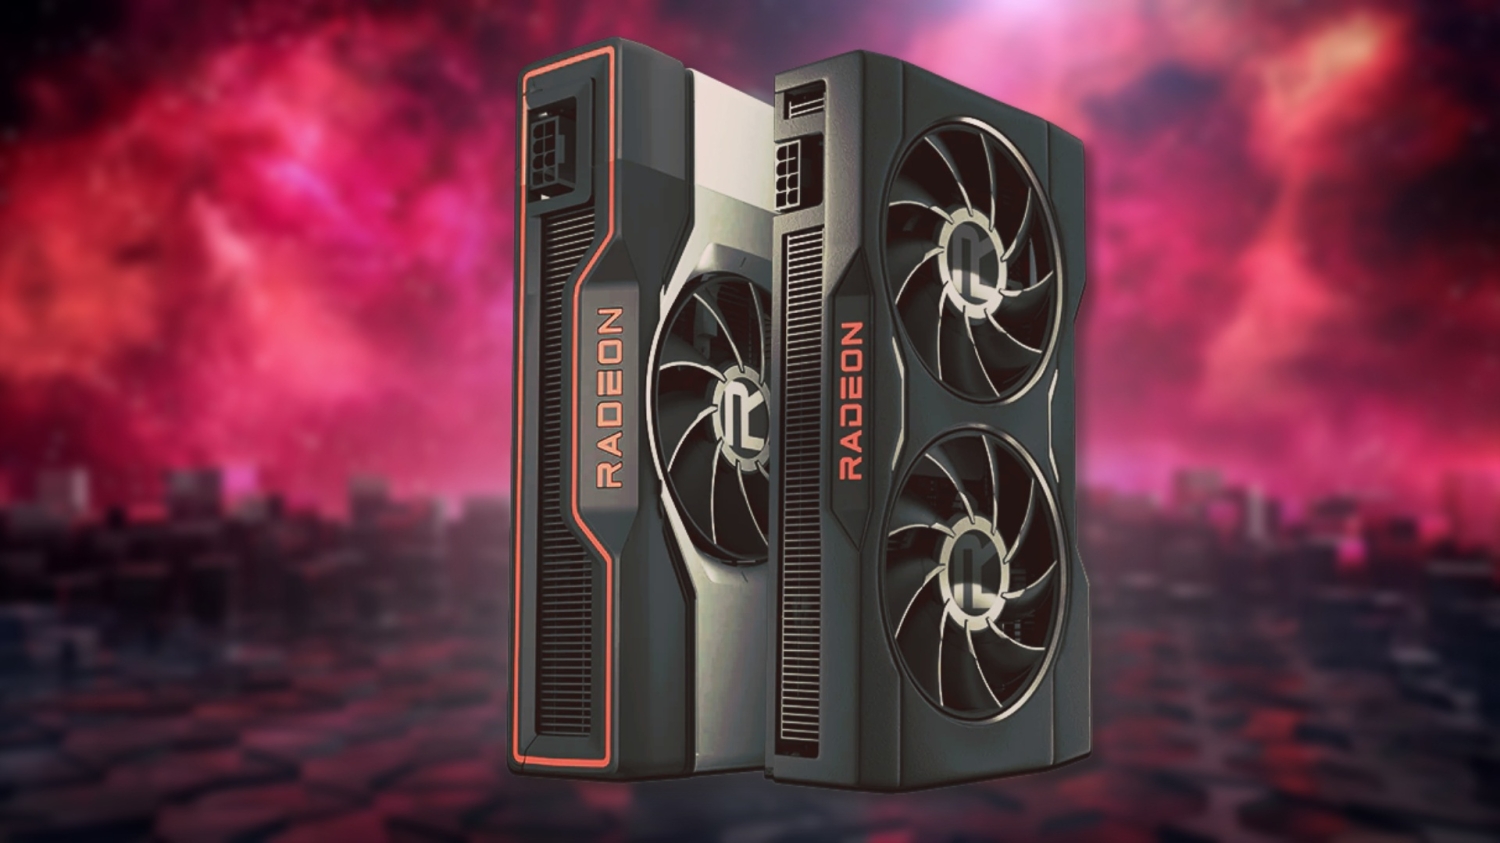 AMD officialise les Radeon RX 7800 XT et RX 7700 XT pour jouer en